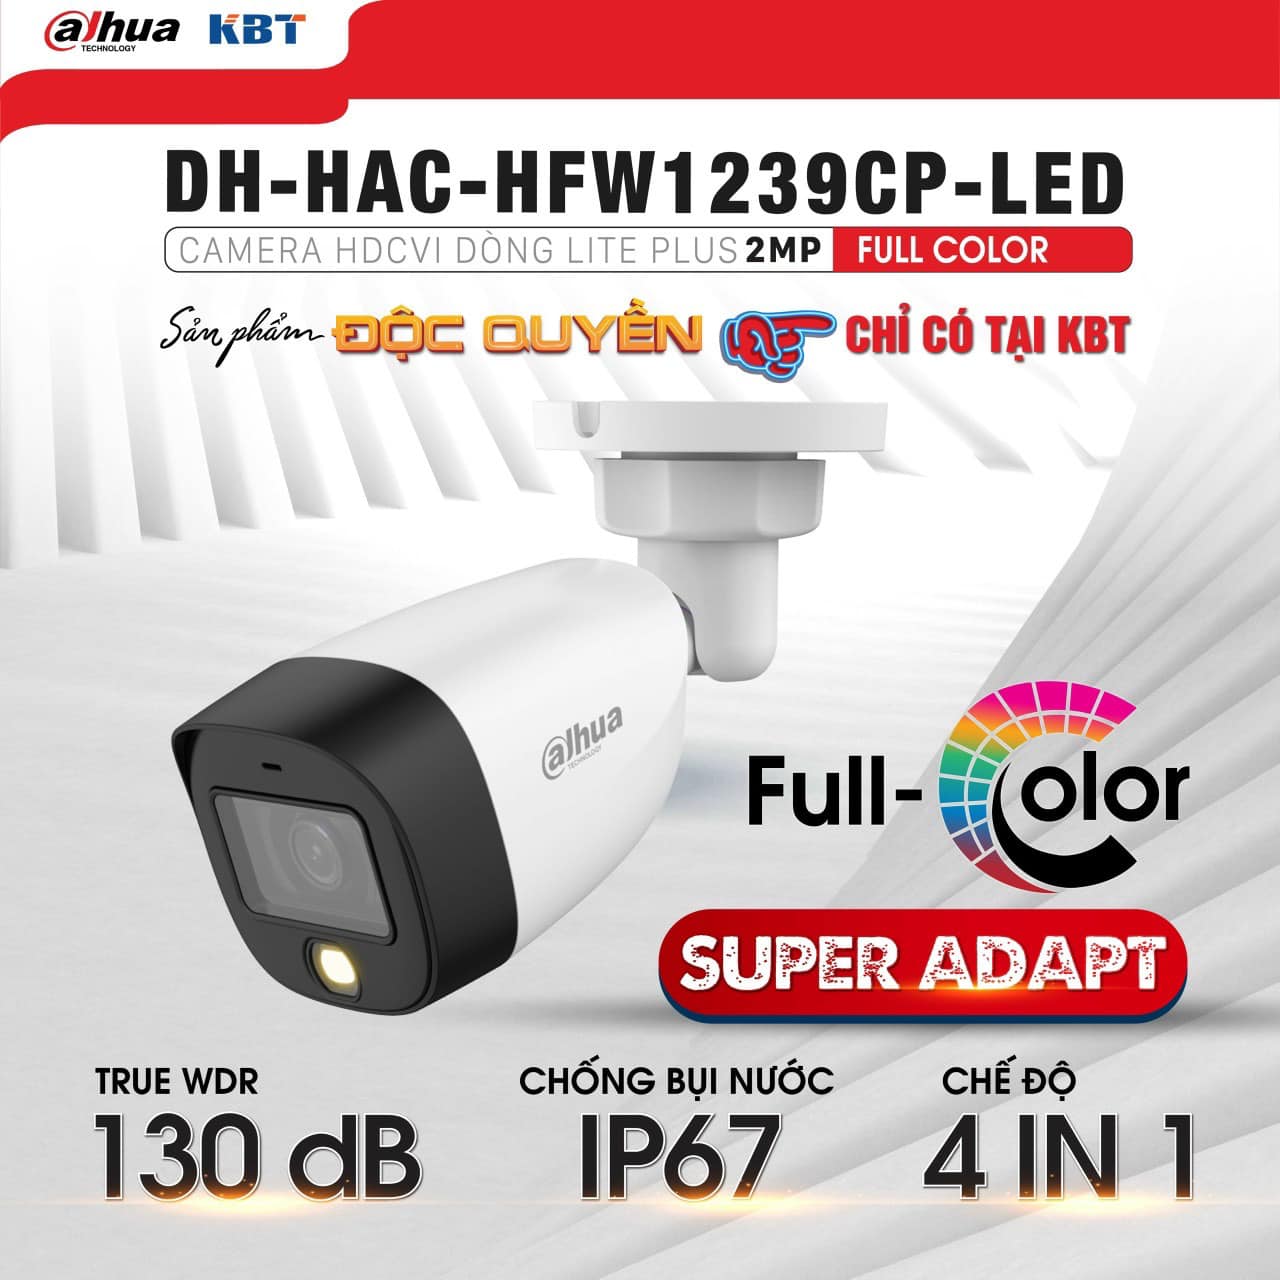 Camera 2MP Full Color có màu ban đêm, có mic, DAHUA 1239CP-A-LED 1239TLMP (hàng chính hãng)